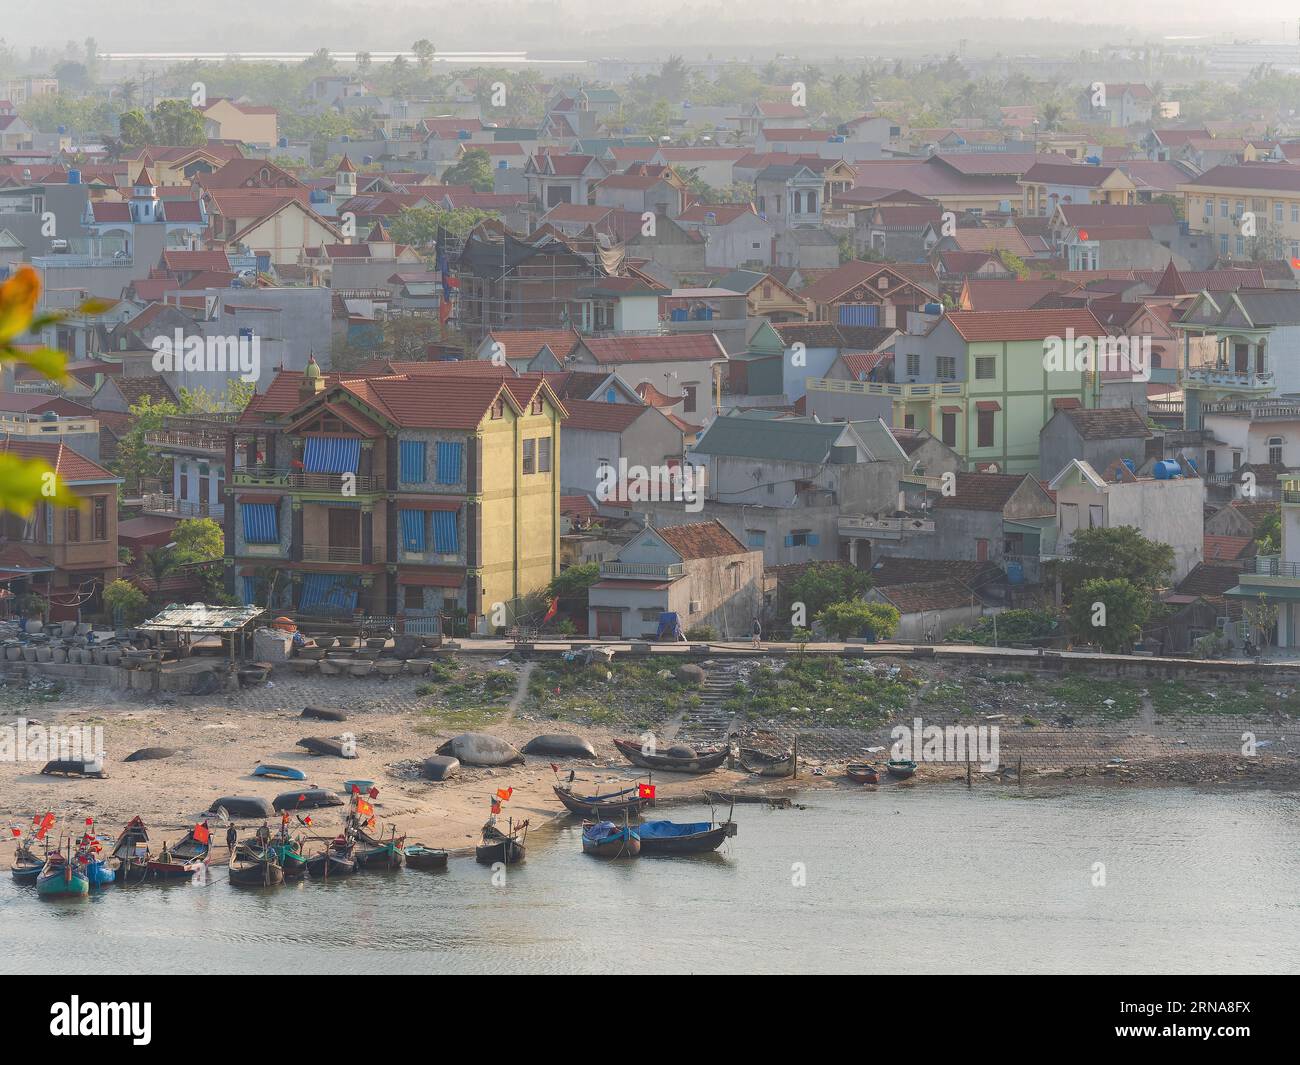 Hai Binh, un village de pêcheurs le long de la rivière Song Lach Bang dans la province de Thanh Hoa au Vietnam. Les bateaux au premier plan sont brillamment éclairés, tandis que le v Banque D'Images